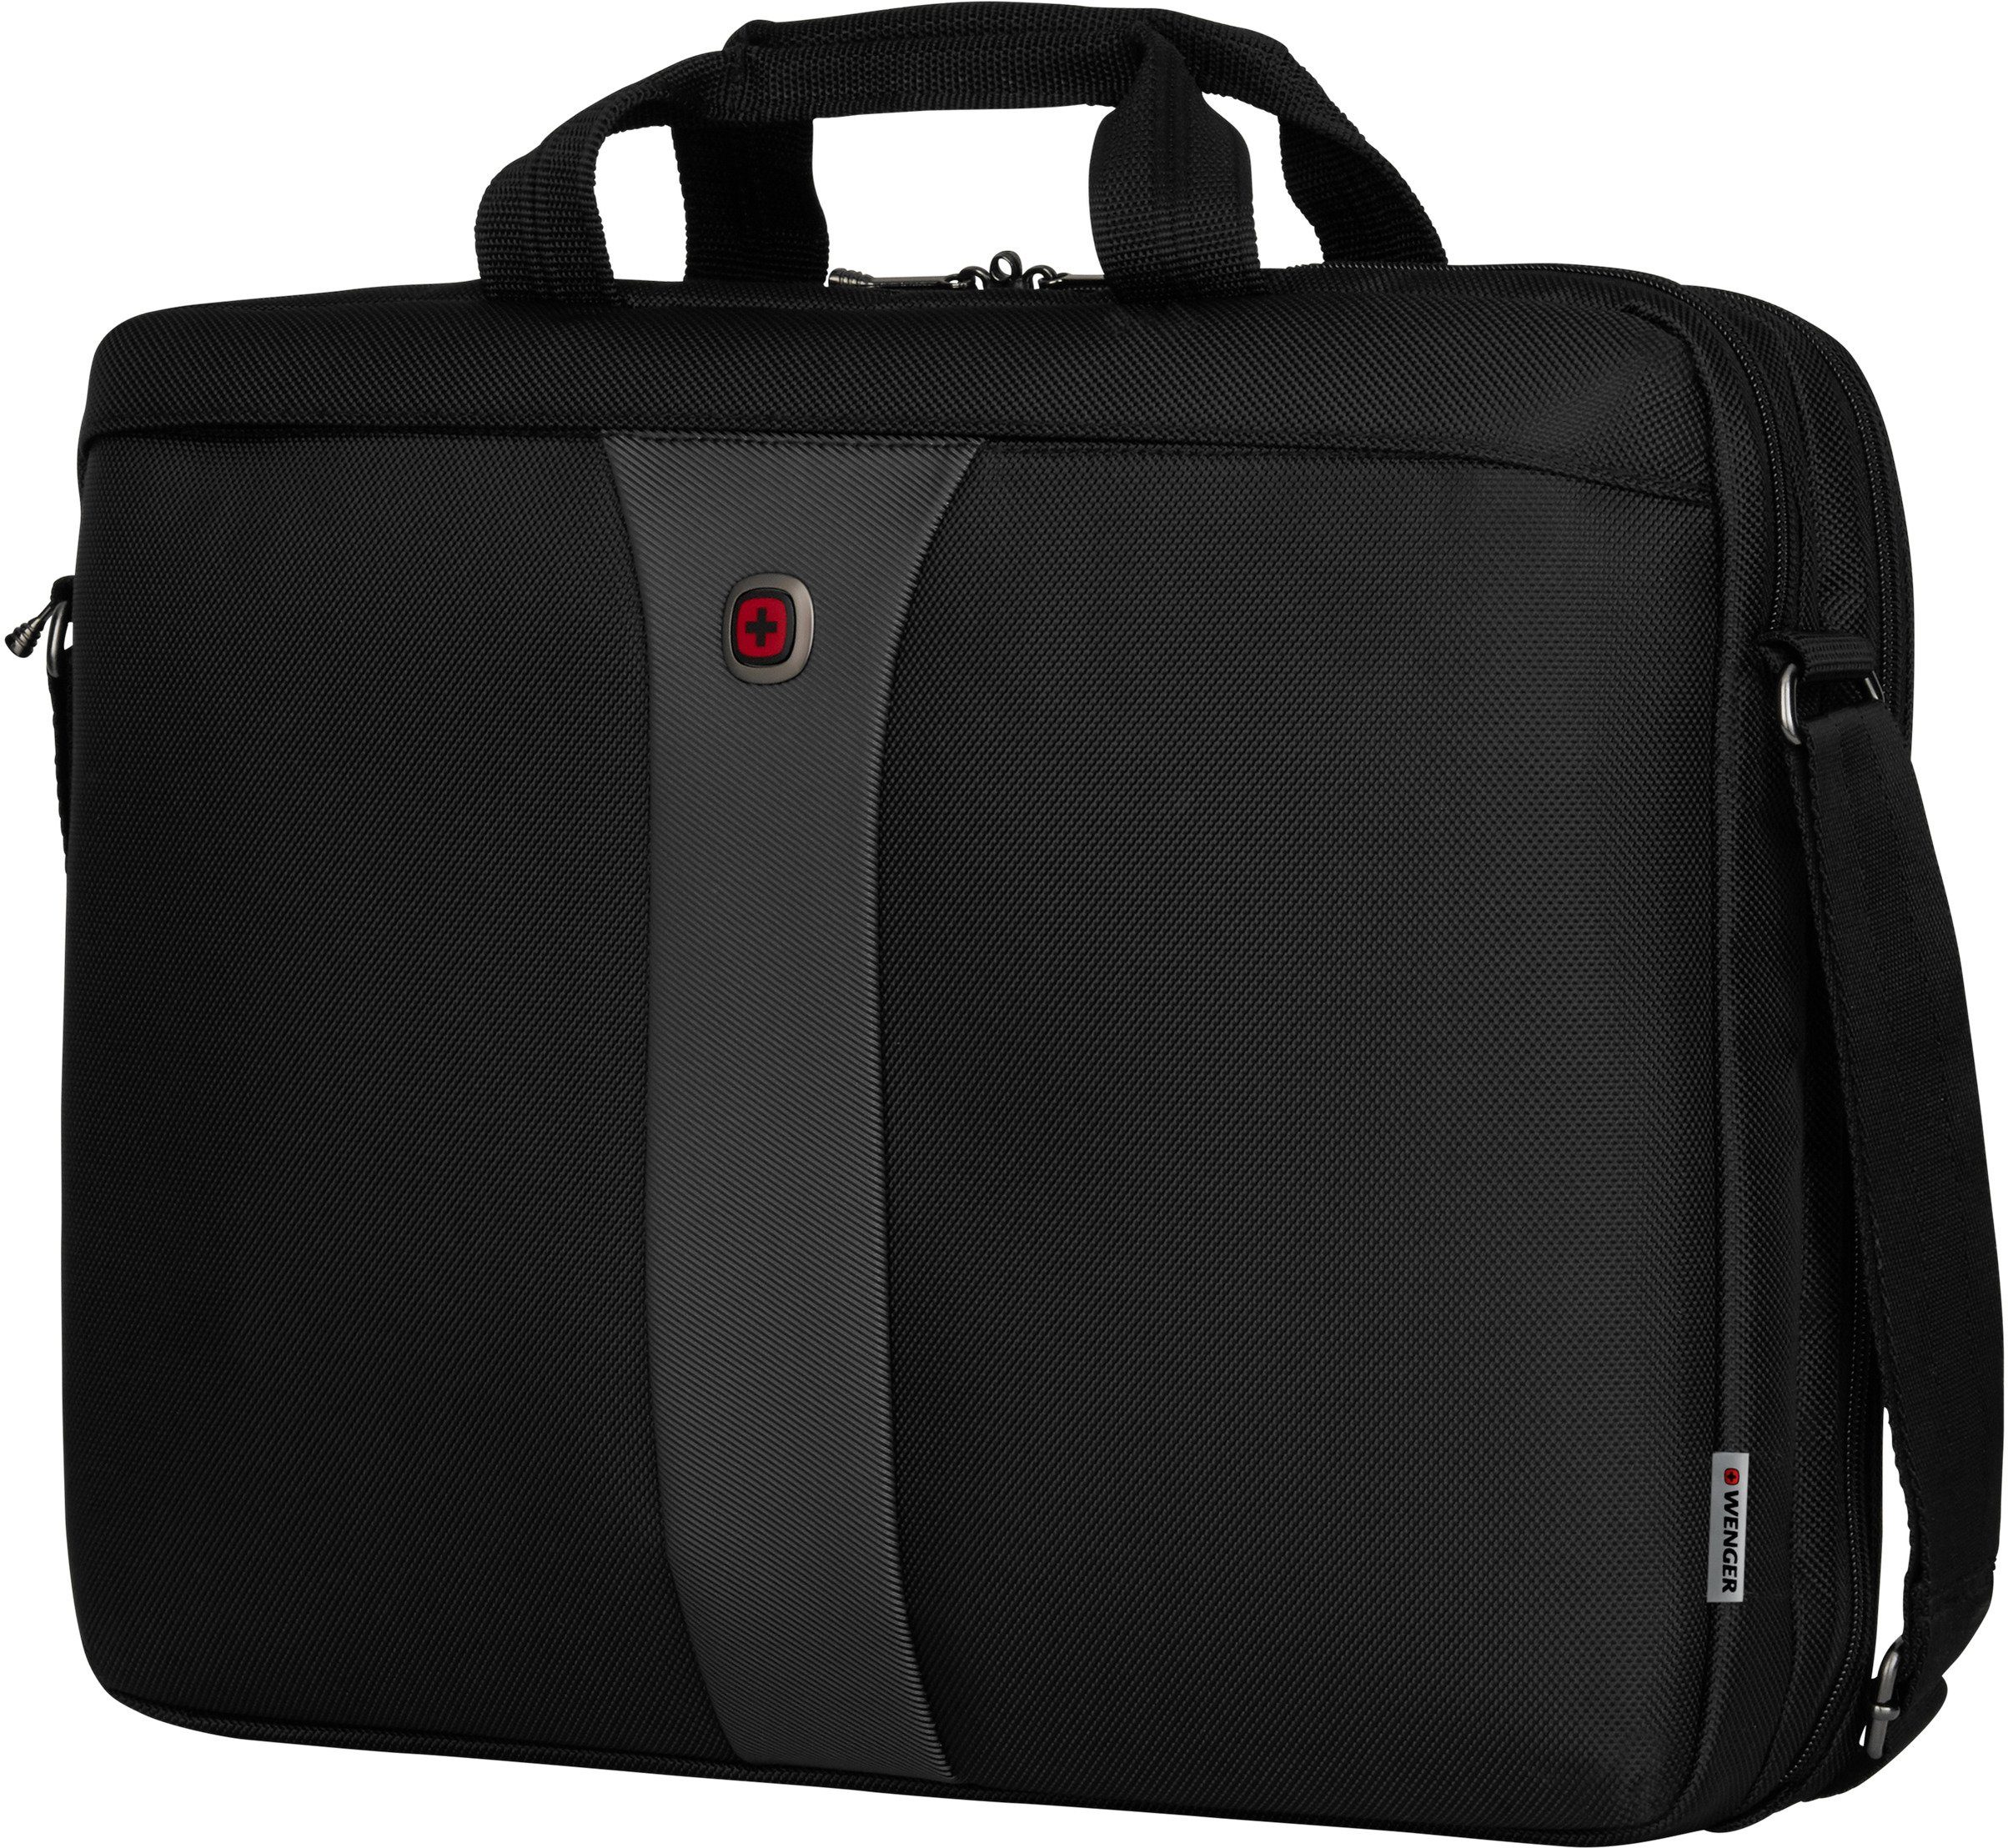 Wenger Schutzsystem mit schwarz/grau, Legacy, Laptopfach und 17-Zoll ShockGuard Laptoptasche